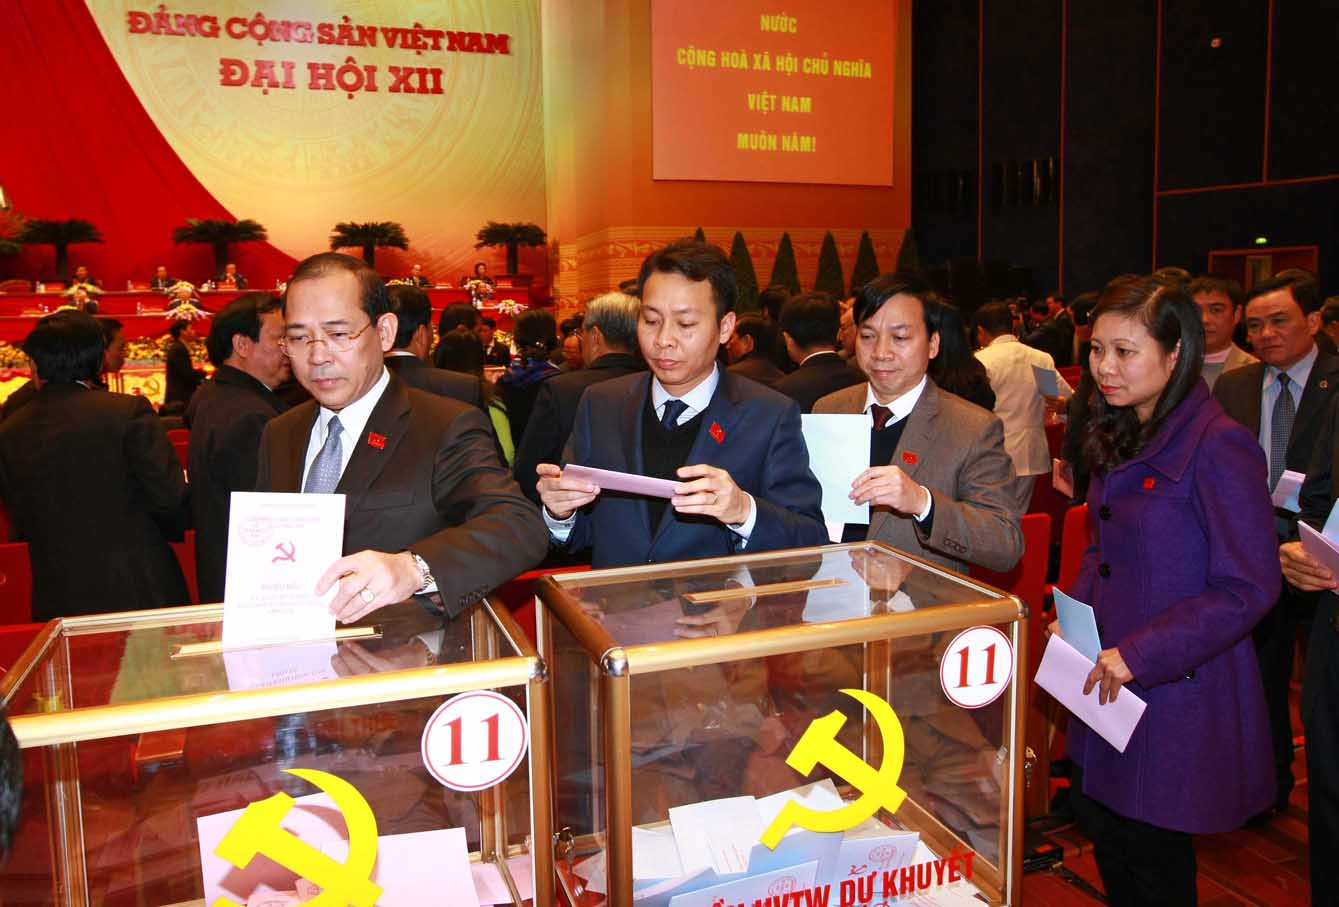 Các đại biểu bỏ phiếu bầu BCH T.Ư khóa XII	- Ảnh: Lưu Quang Phổ